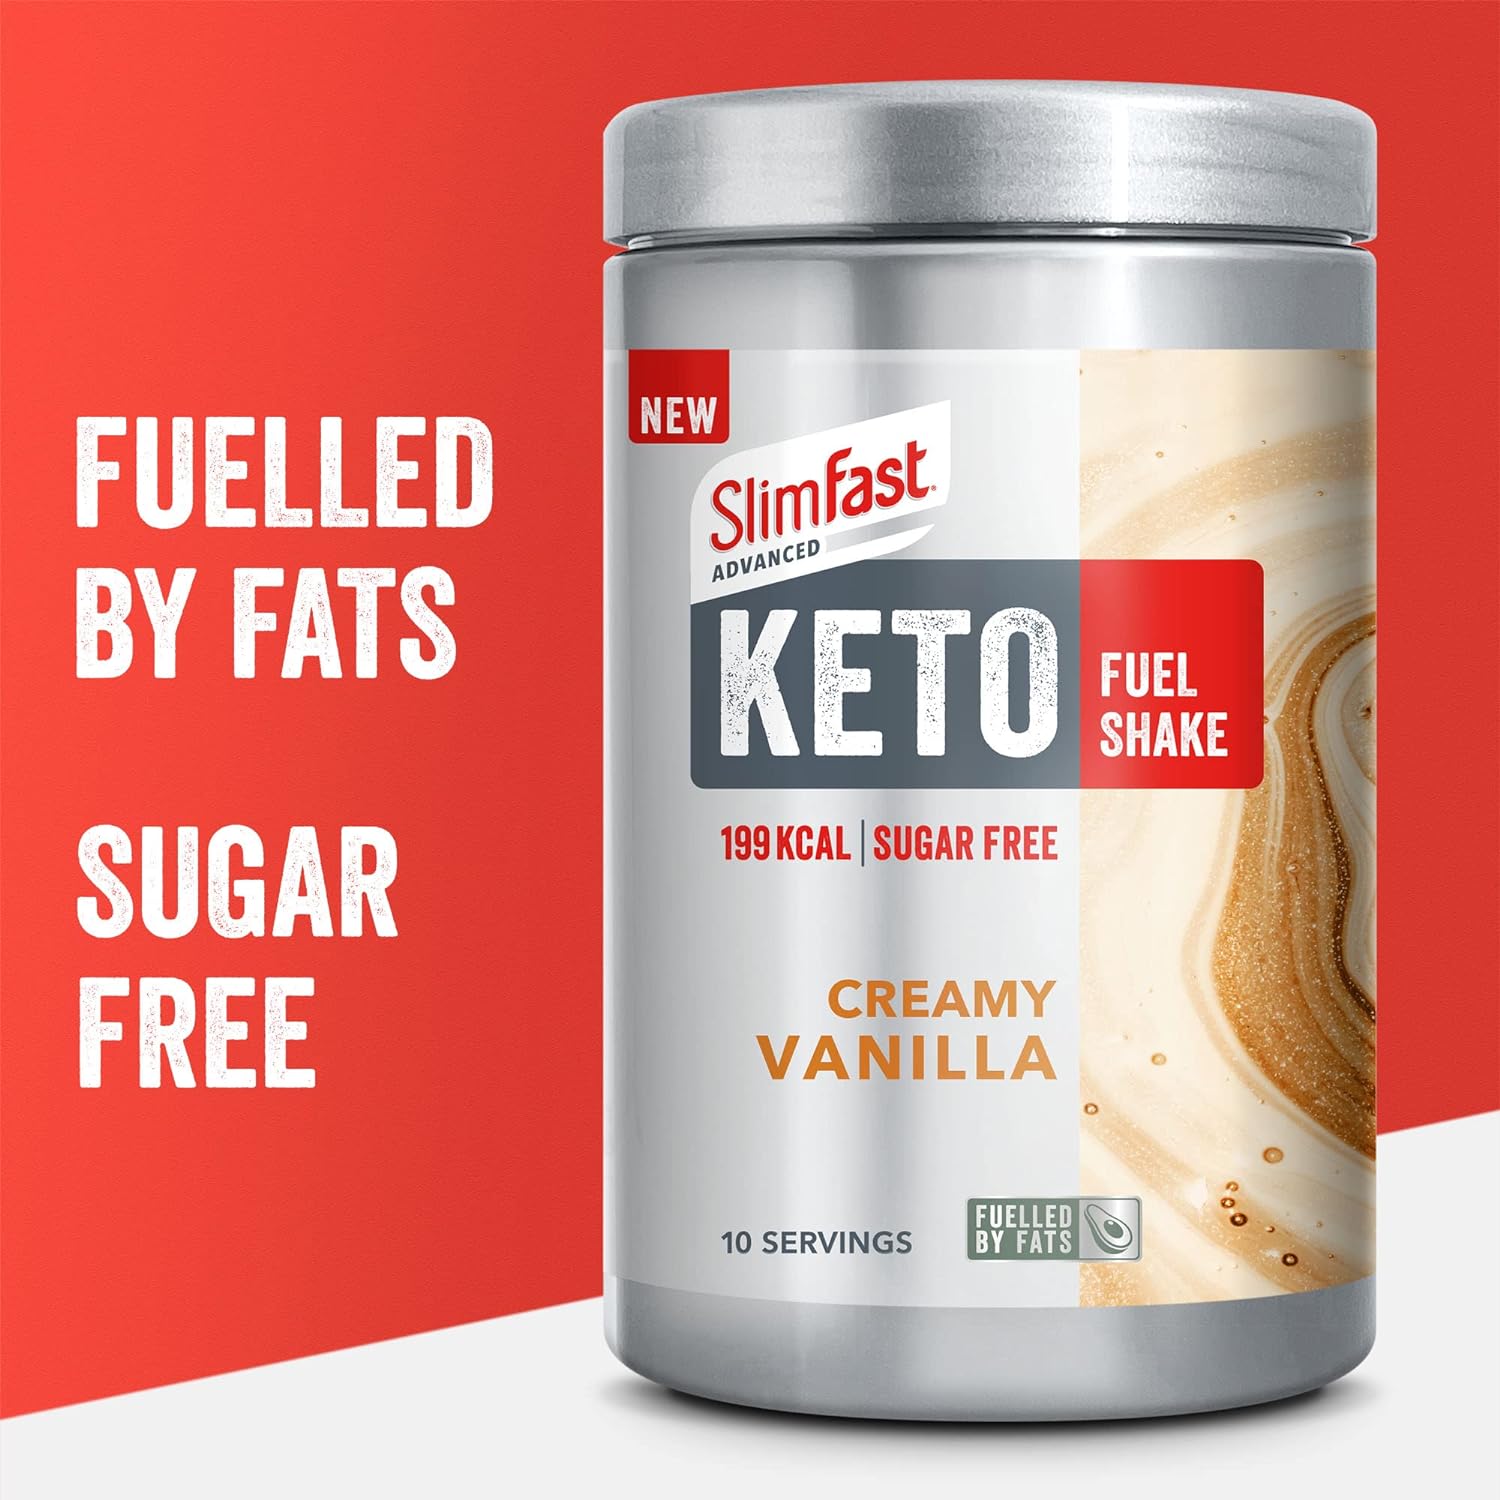 SlimFast Keto Fuel Shake Review